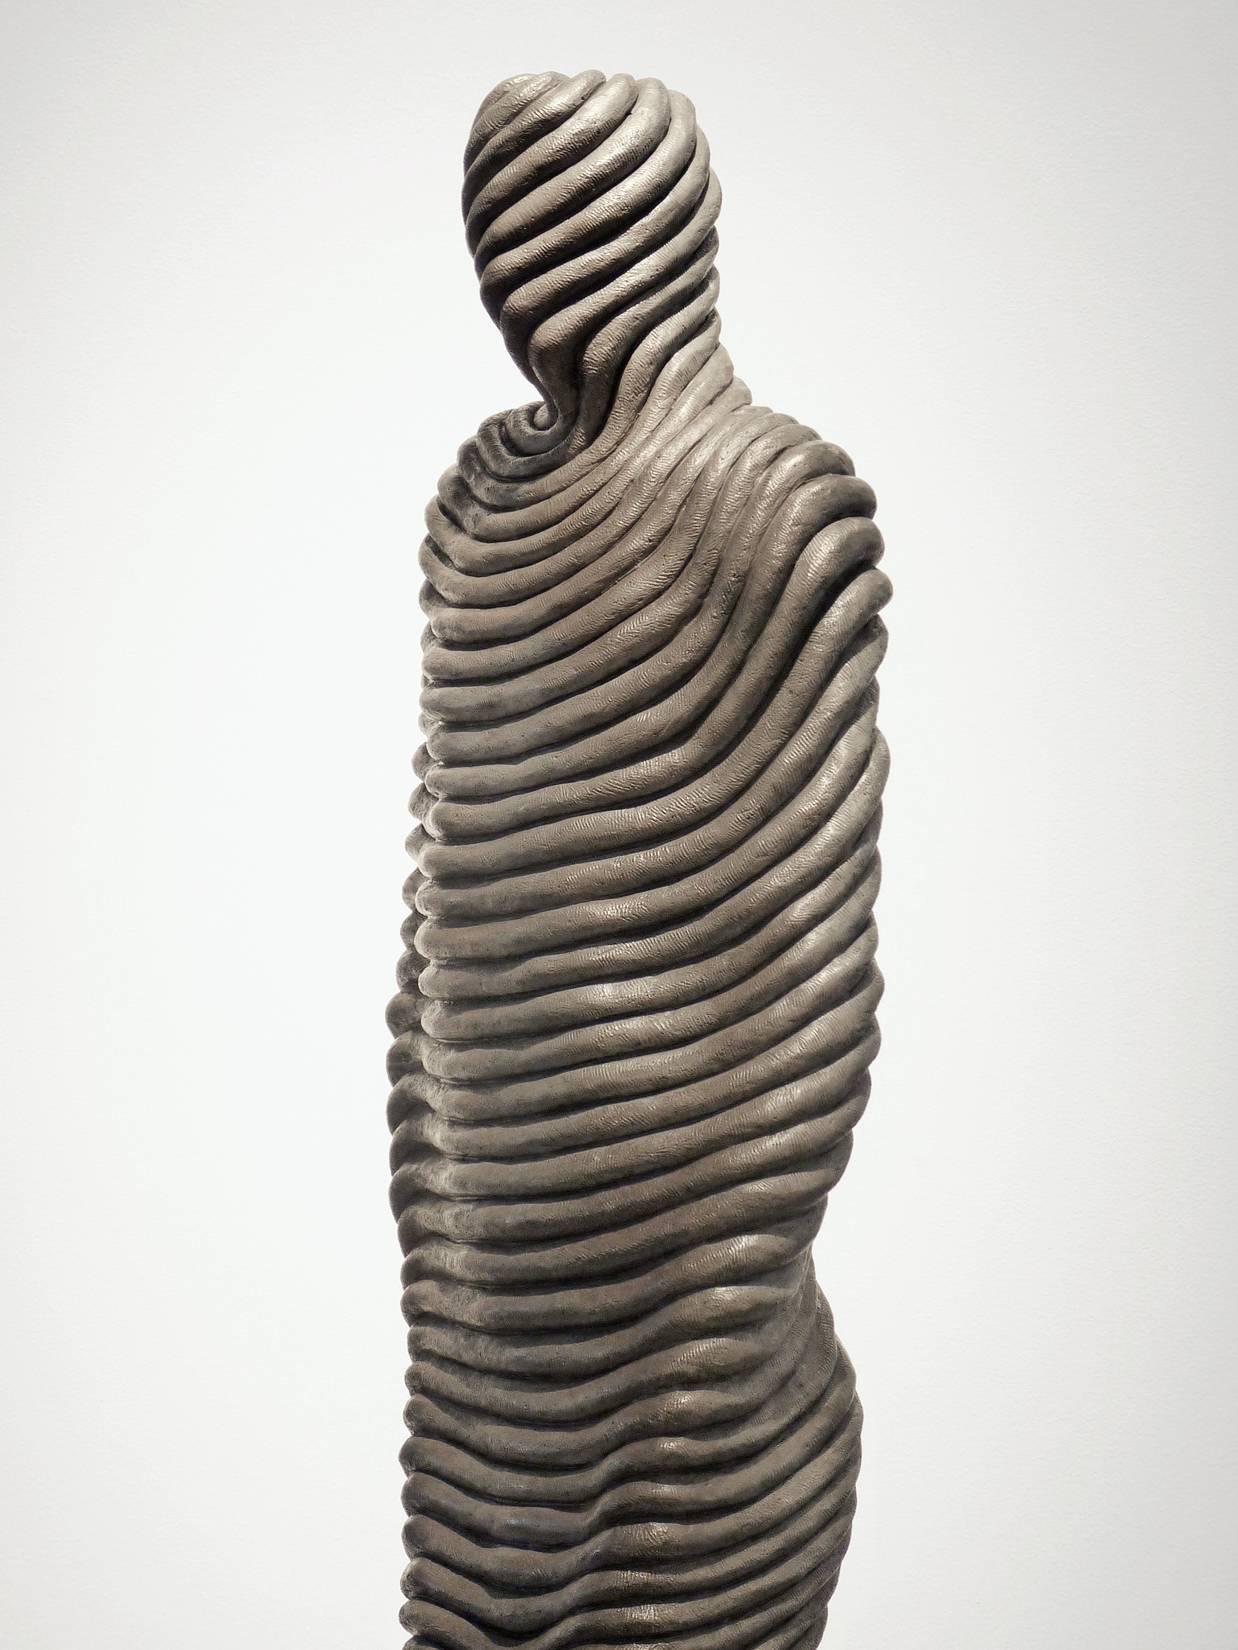 Bobine - Or Figurative Sculpture par Emil Alzamora